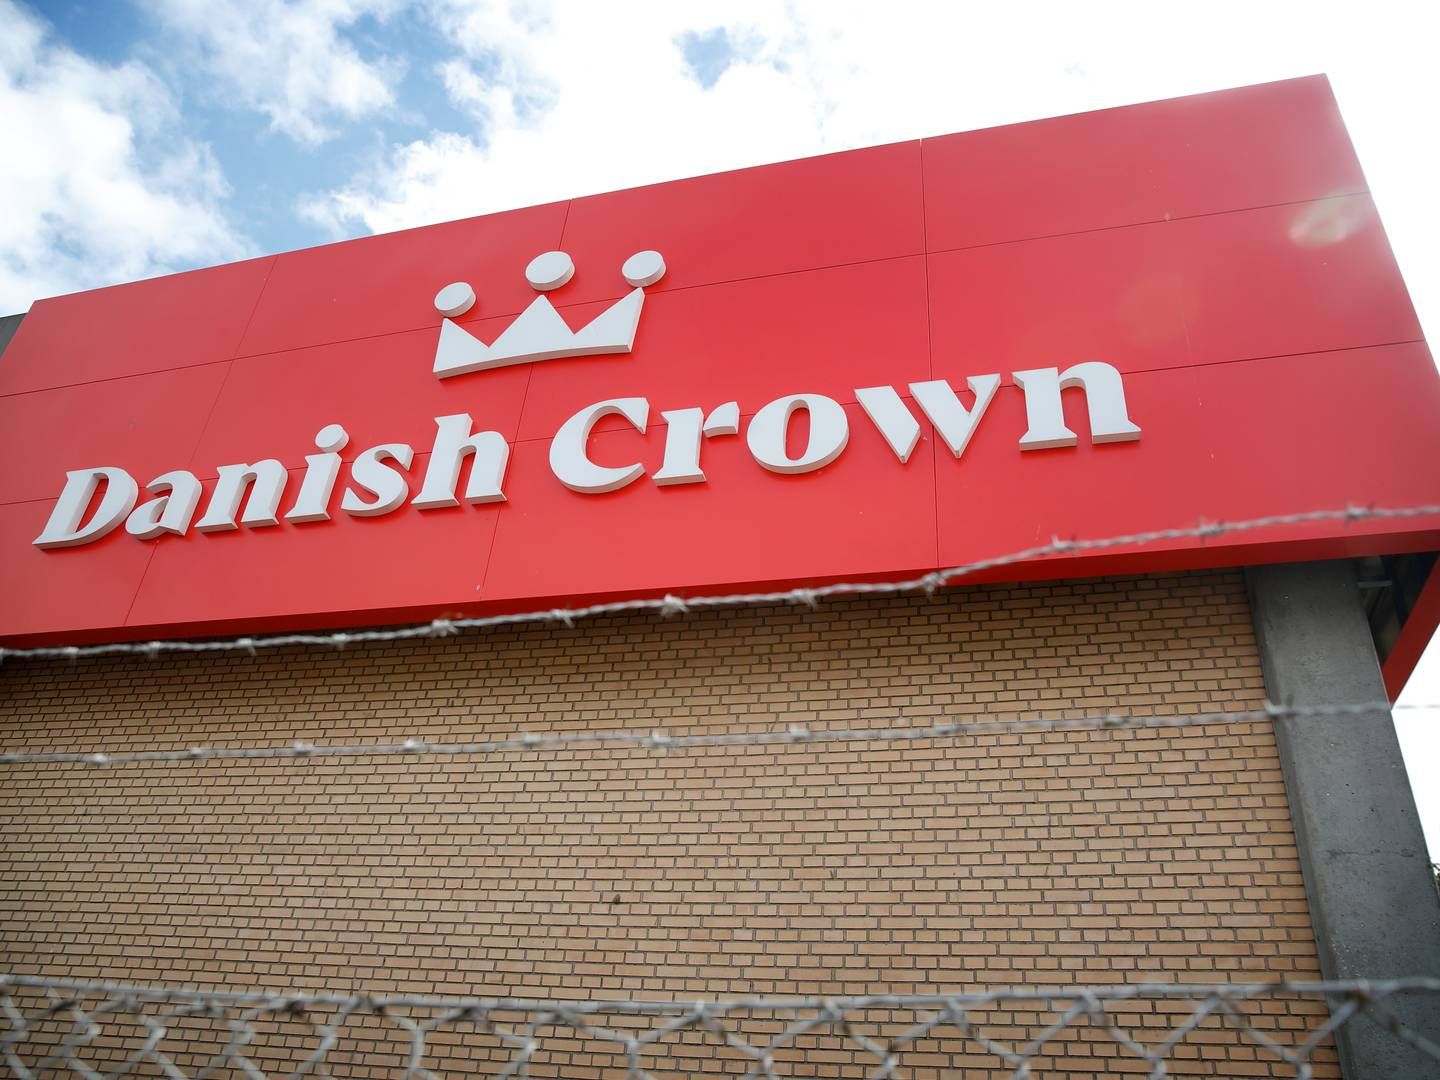 Fremover skal der stå Danish Crown på bygningerne, som hidtil har huset Skare-koncernens hovedkontor i Vejen. | Foto: Jens Dresling